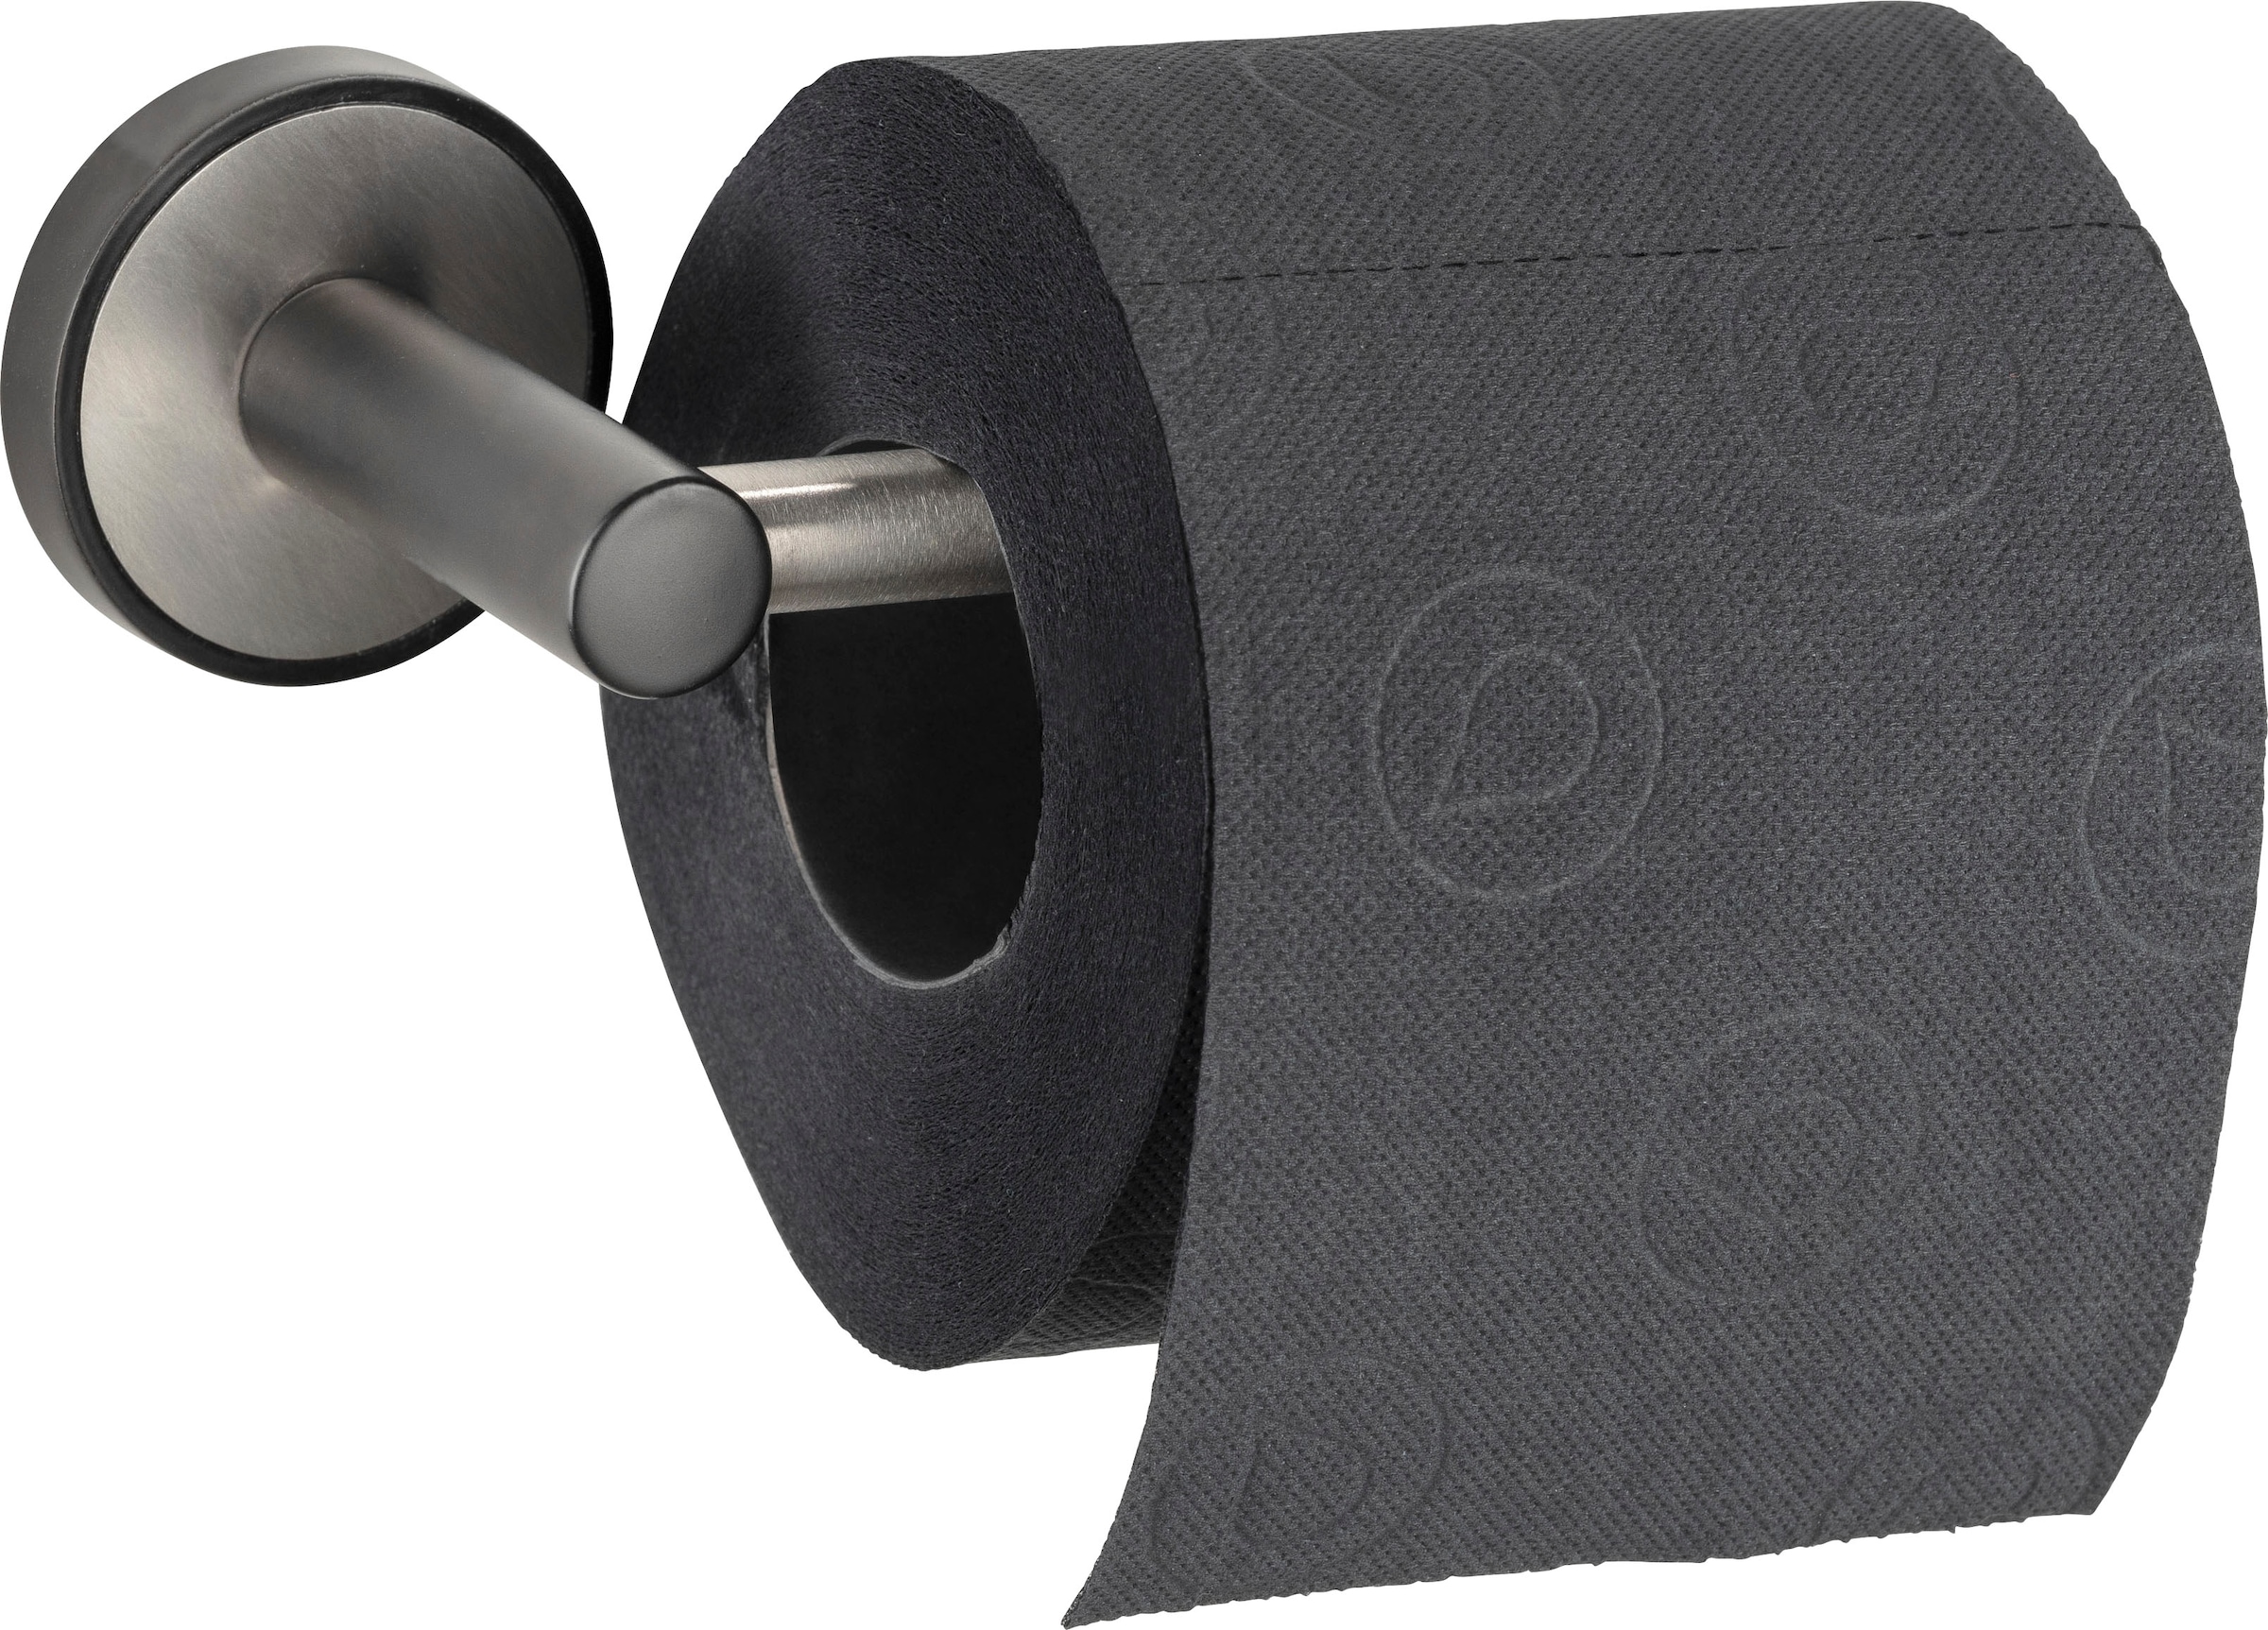 WENKO Toilettenpapierhalter »UV-Loc® Udine«, Befestigen ohne Bohren bei OTTO